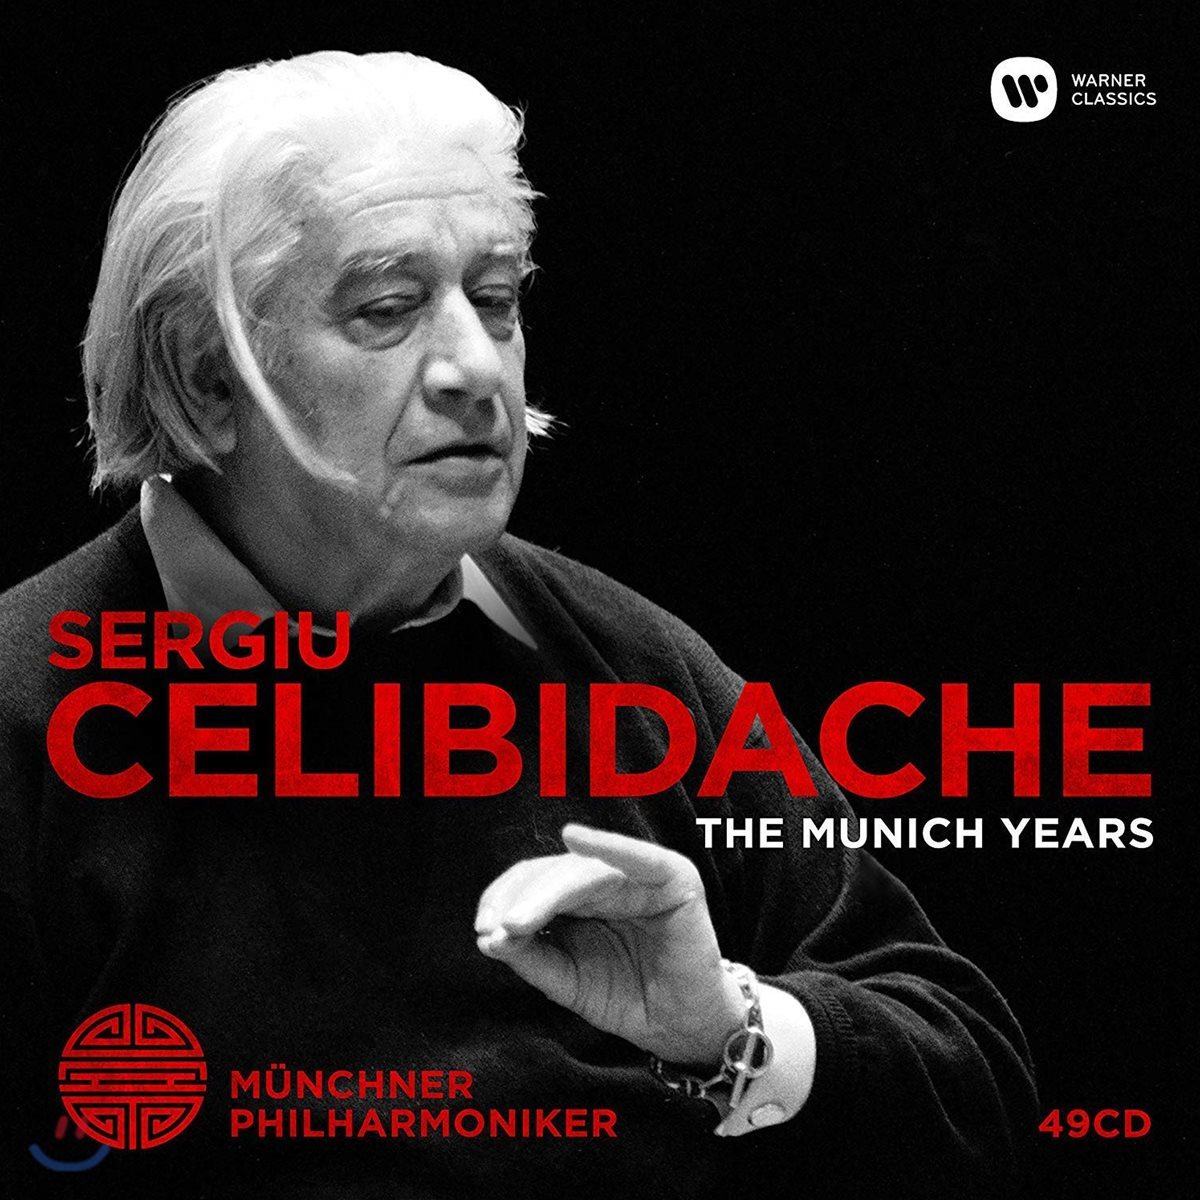 세르주 첼리비다케 / 뮌헨 필하모니 실황 녹음 모음집 (Sergiu Celibidache - The Munich Years) [49CD]